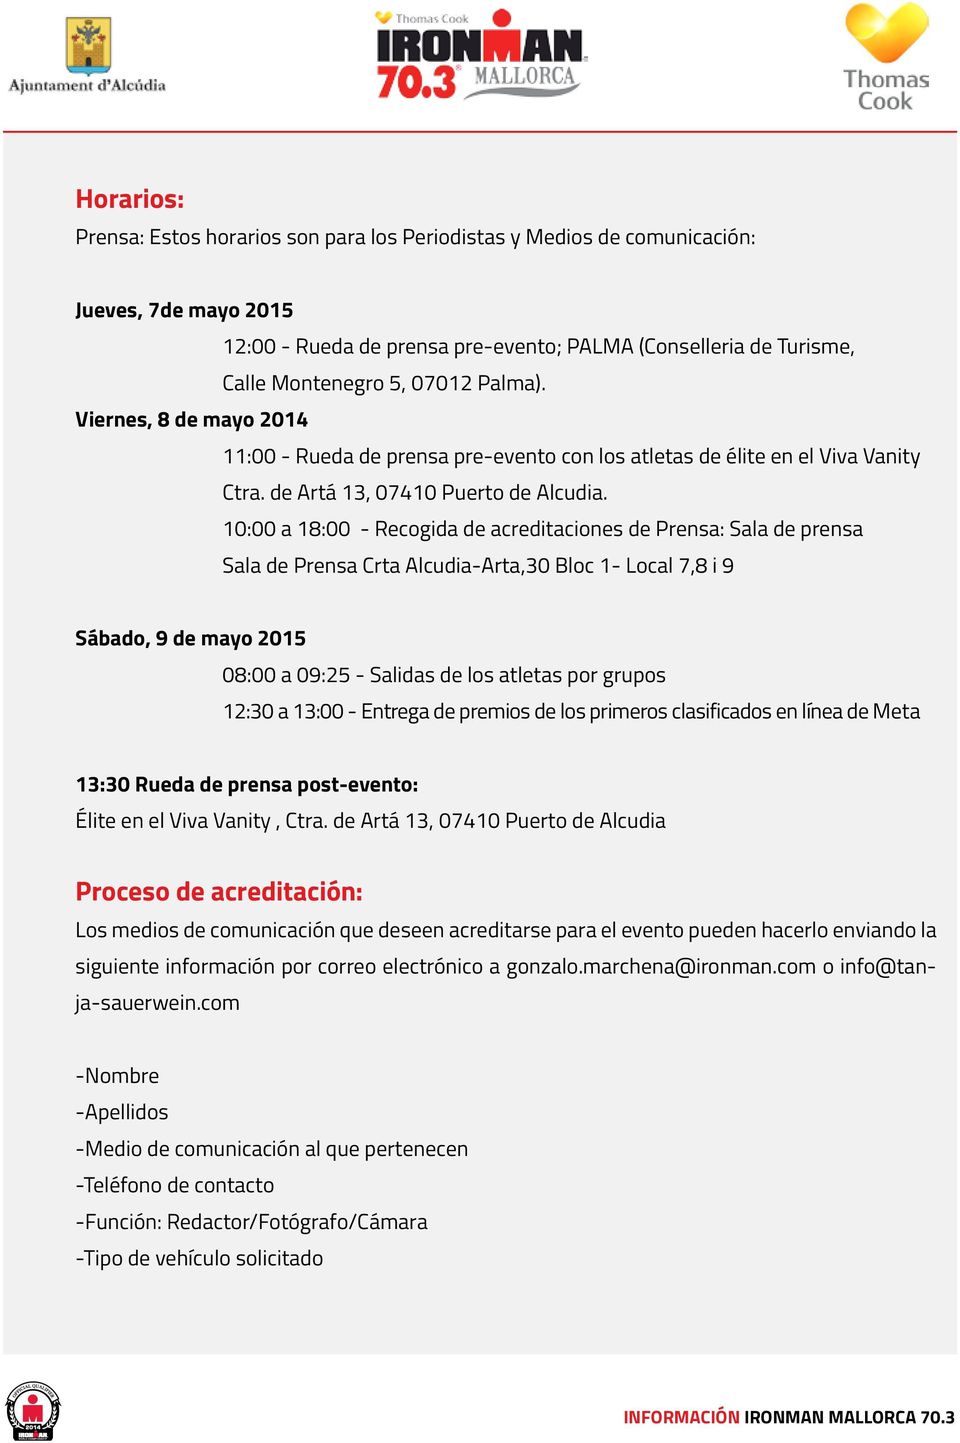 10:00 a 18:00 - Recogida de acreditaciones de Prensa: Sala de prensa Sala de Prensa Crta Alcudia-Arta,30 Bloc 1- Local 7,8 i 9 Sábado, 9 de mayo 2015 08:00 a 09:25 - Salidas de los atletas por grupos